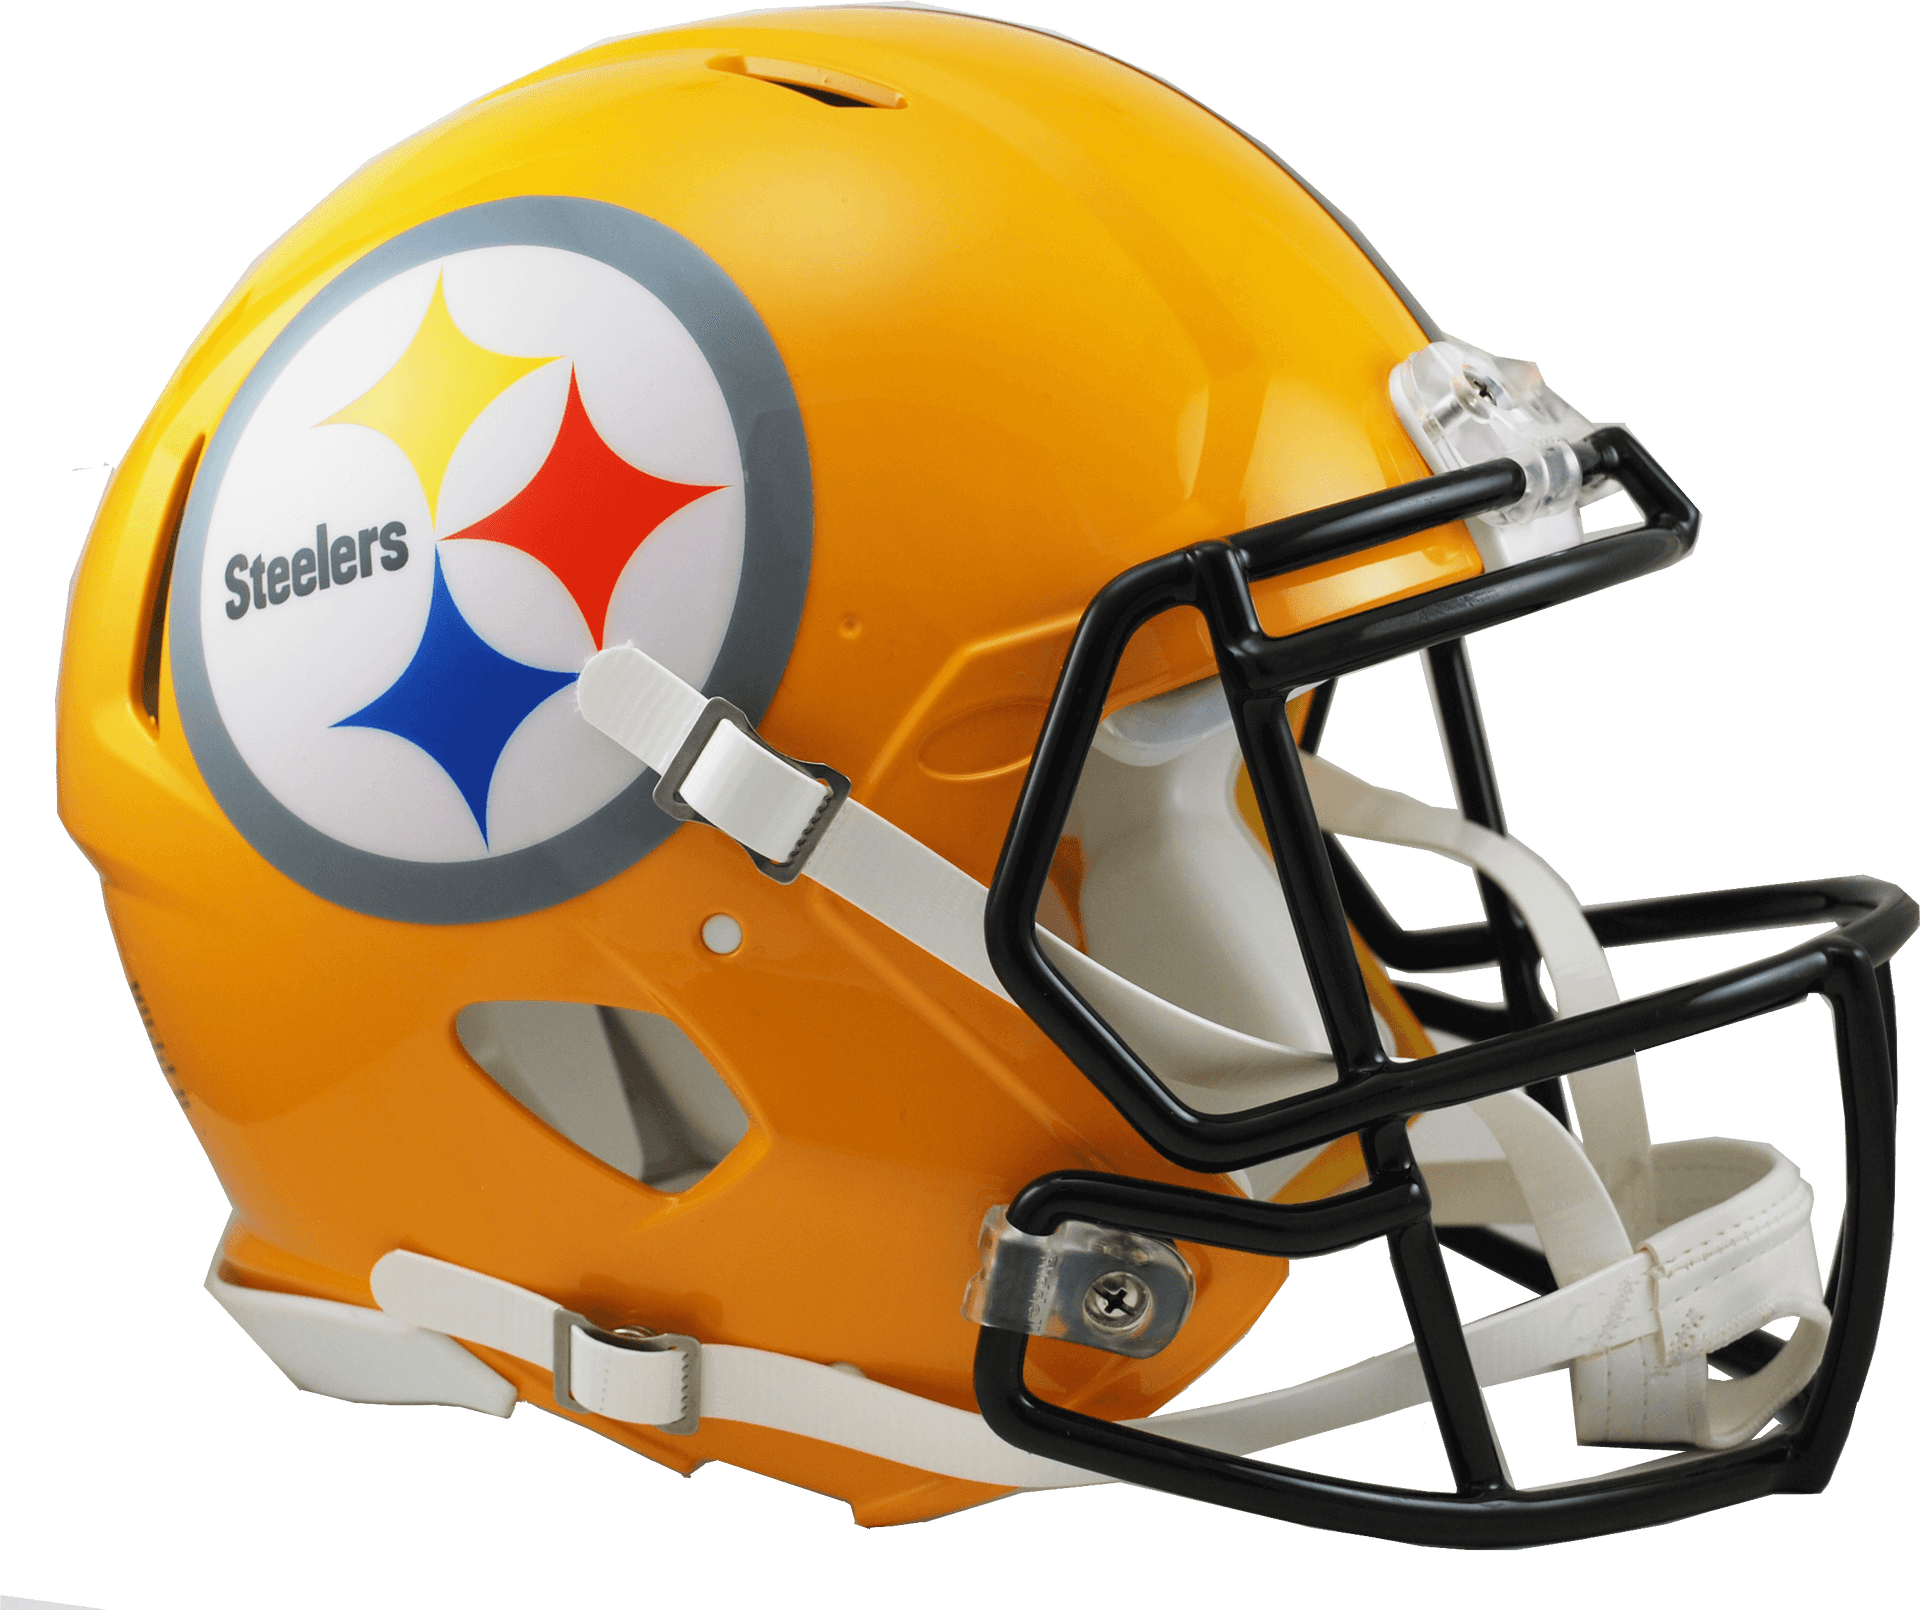 Pittsburgh Steelers Football Helmet PNG